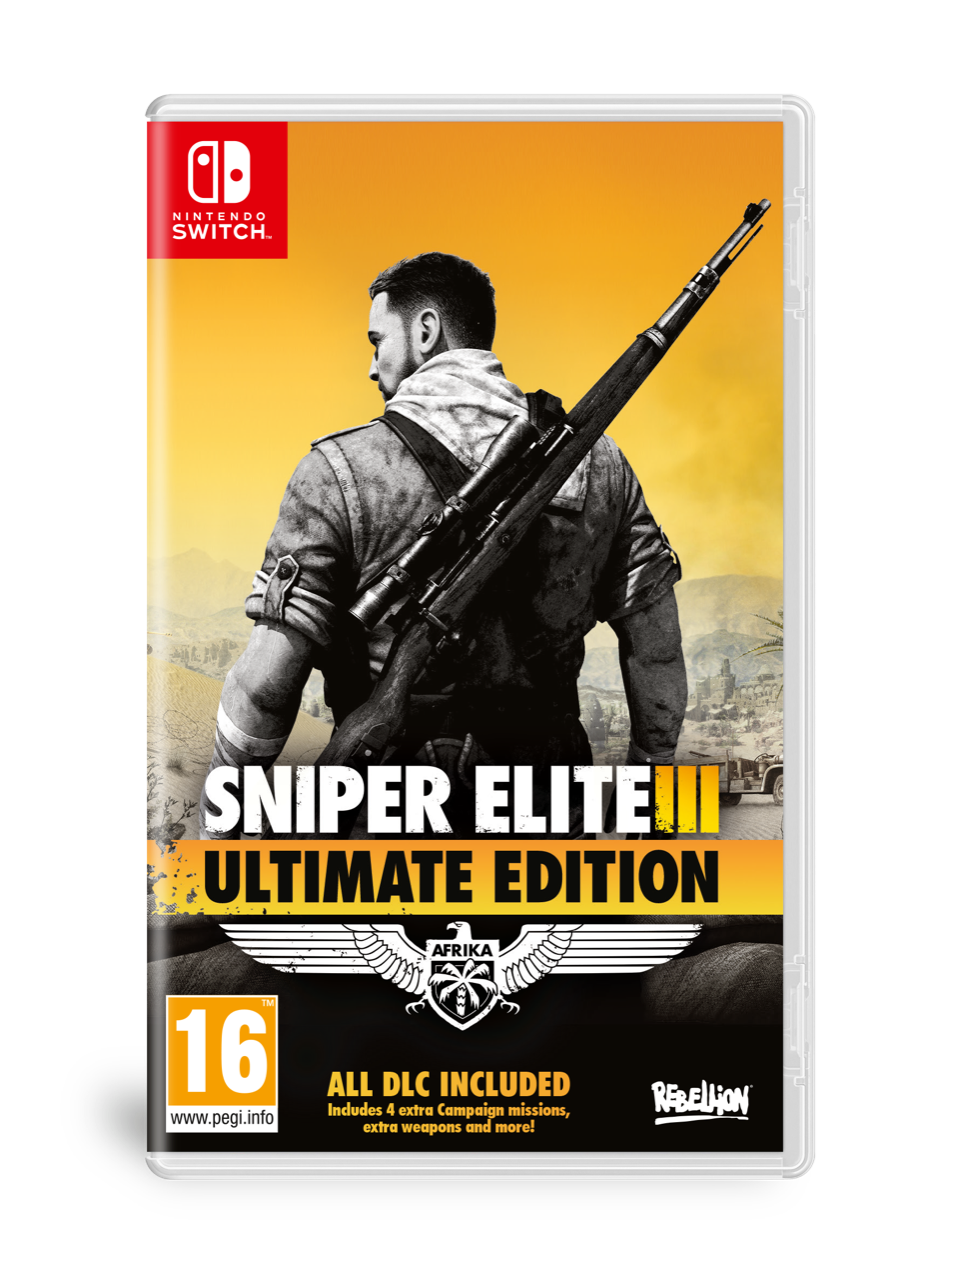 sniper elite 3 coop campaign